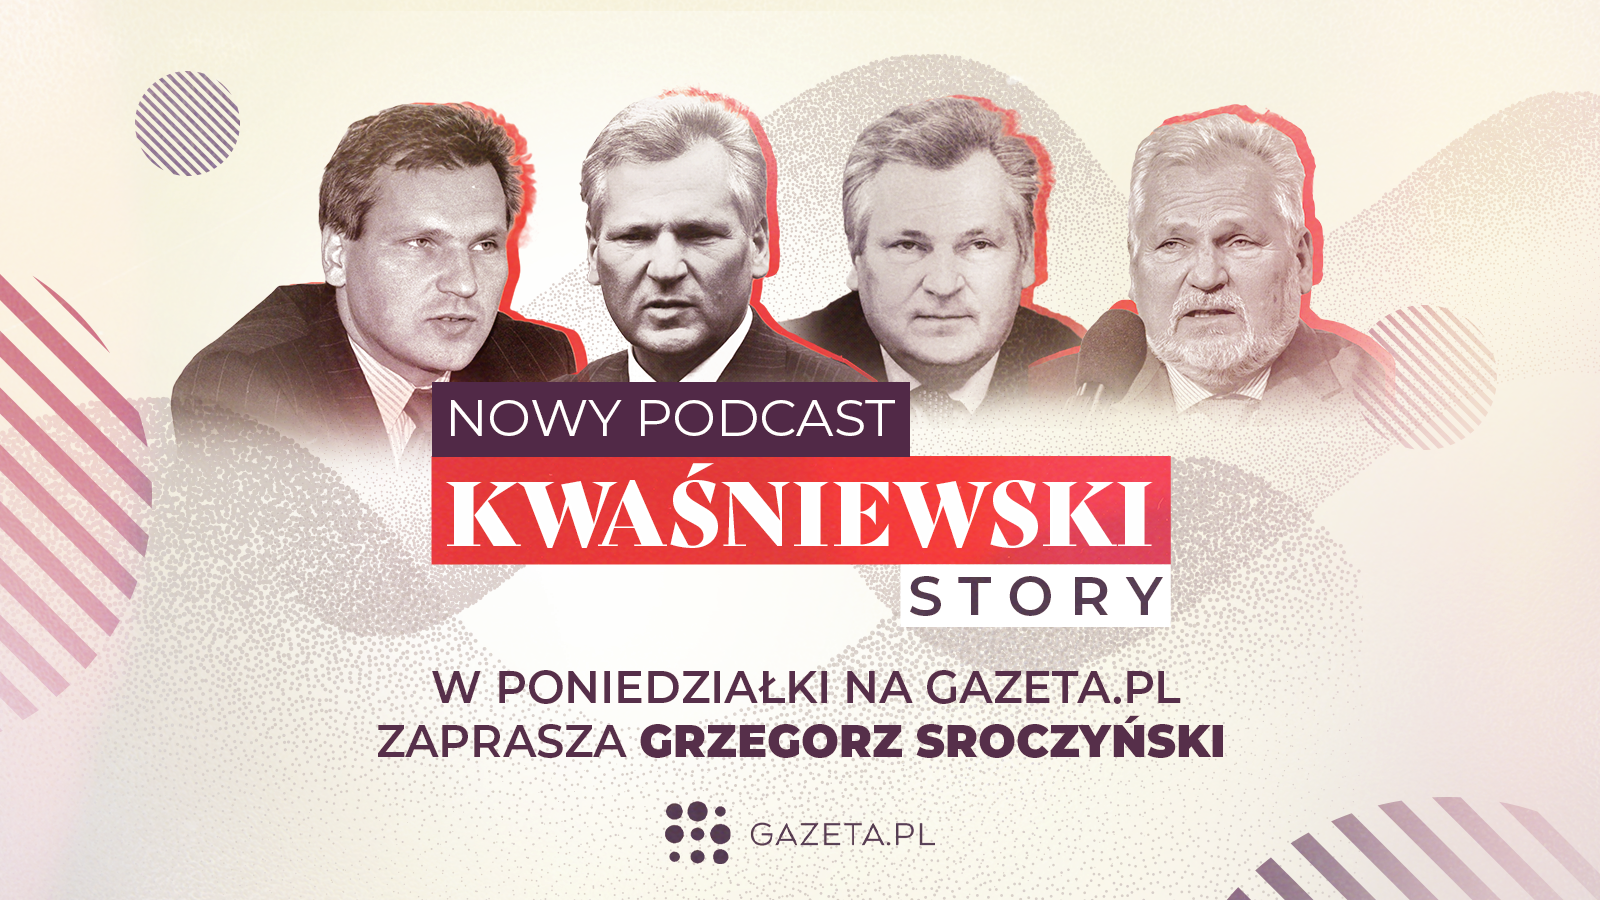 Gazeta.pl prezentuje podcast rzekę o Aleksandrze Kwaśniewskim